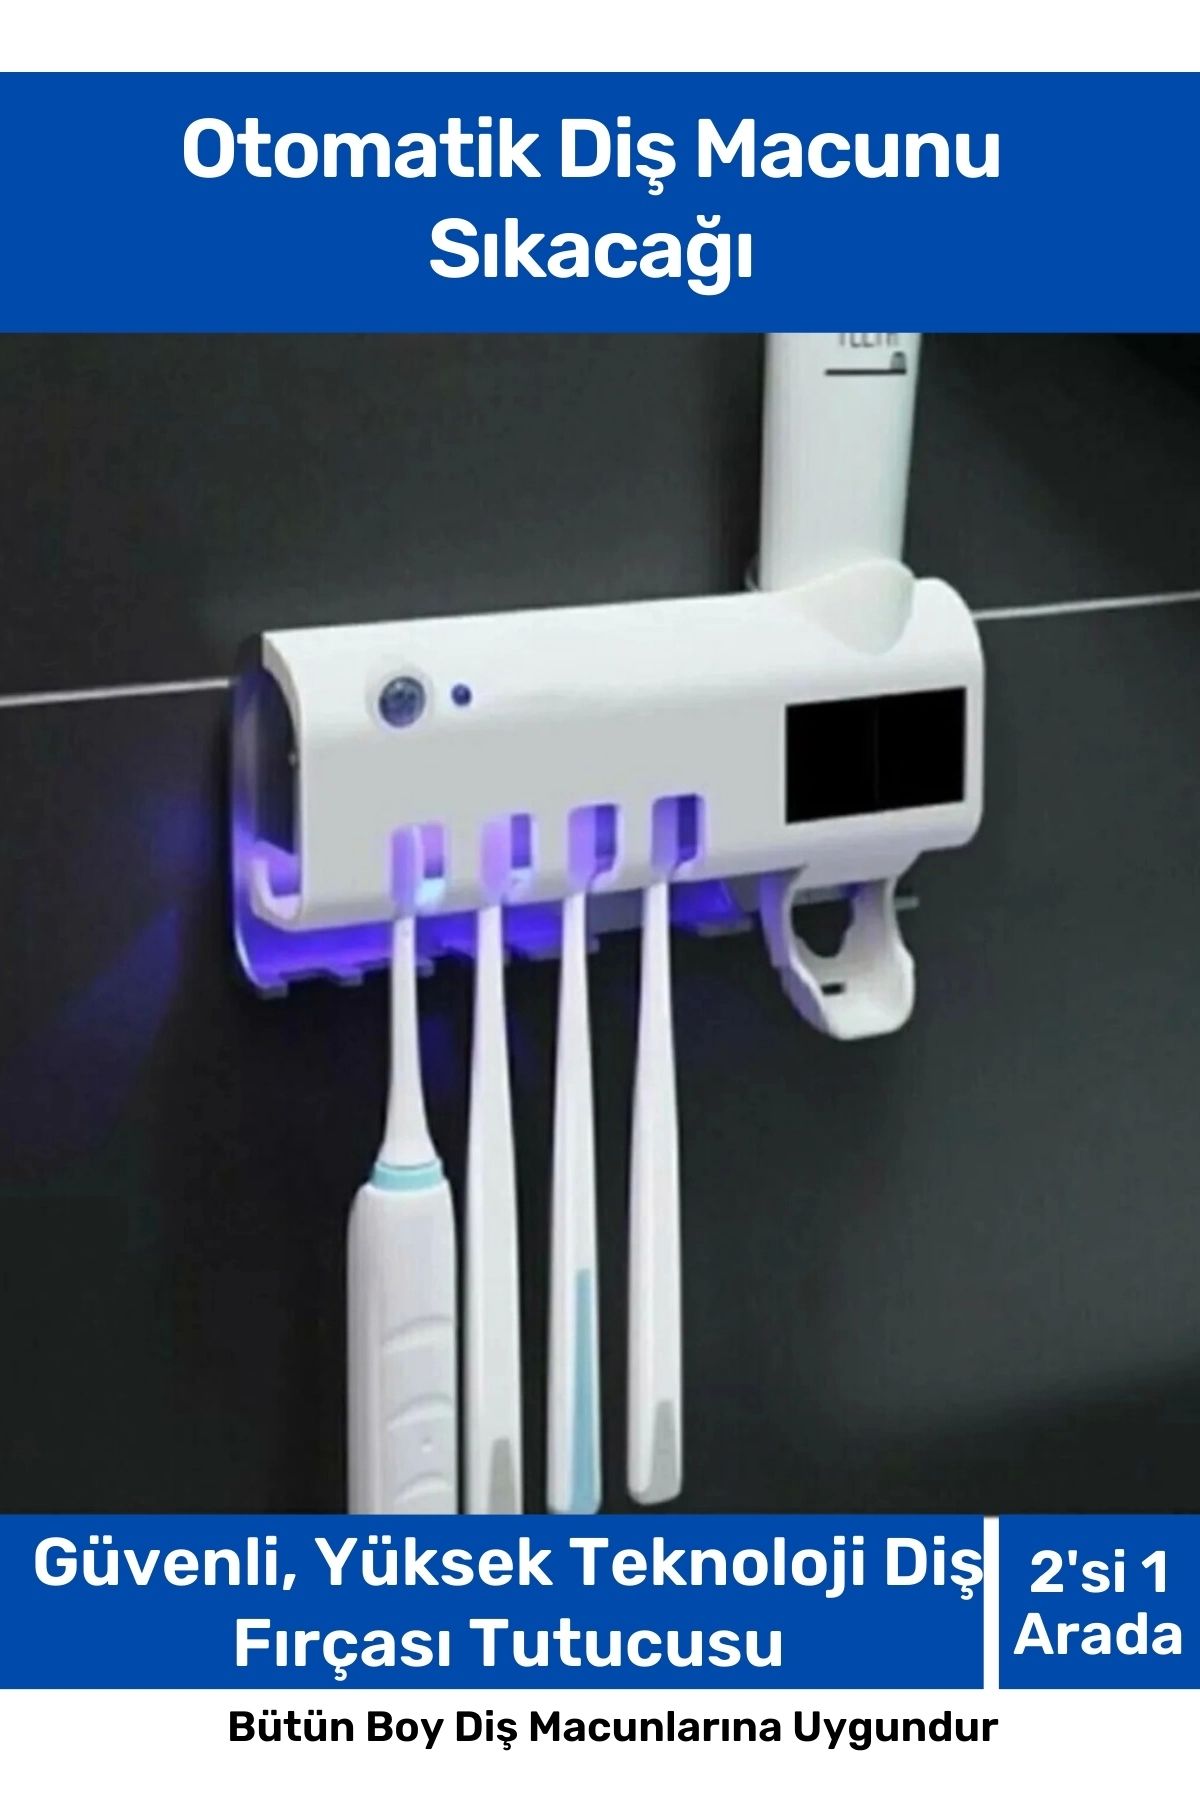 Ala Lavandula Pratik Usb Şarjlı Ve Güneş Enerjili Otomatik Diş Macunu Sıkacağı 4 Adet Diş Fırçalığı Tutucu